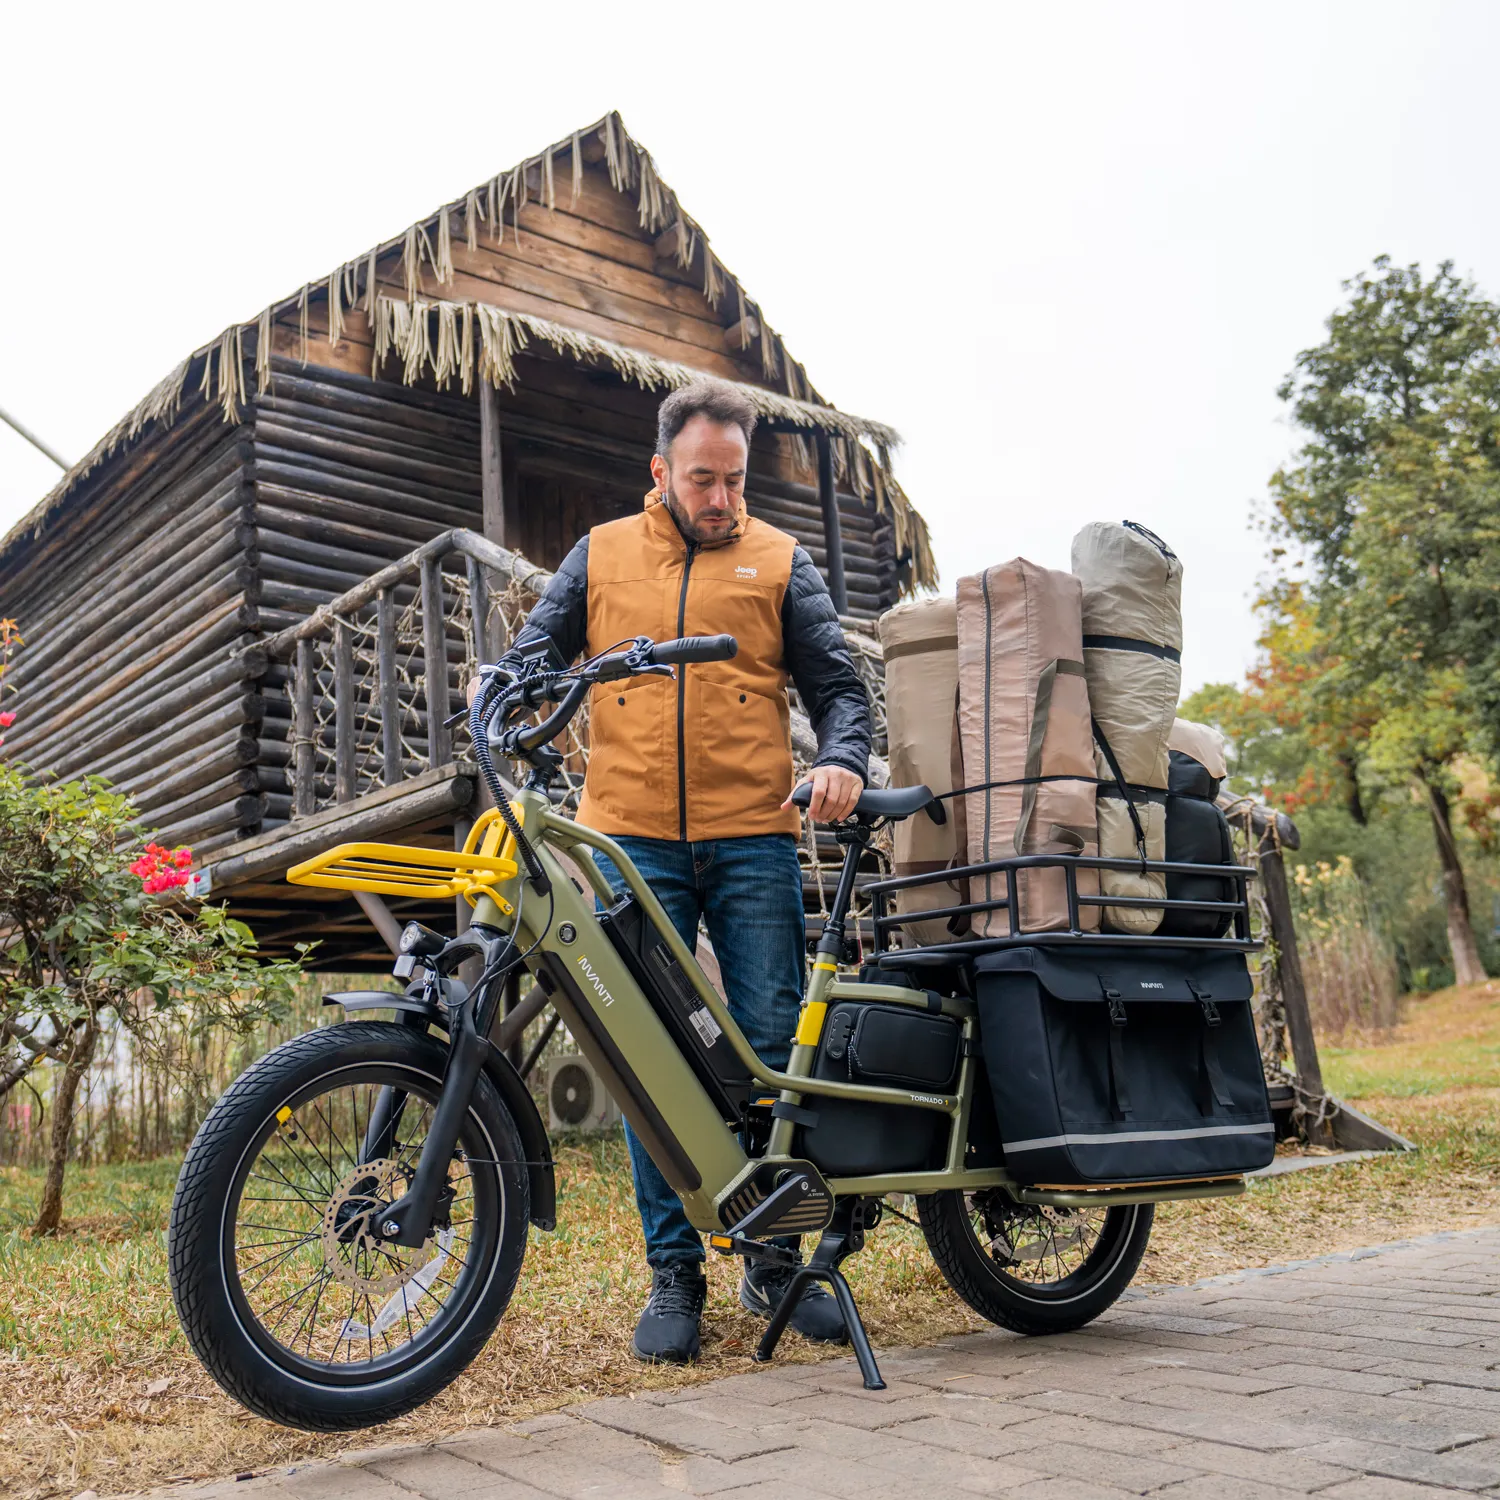 دراجة كهربائية للنقل بالدفع المتوسط من هولندا والسويد دراجة حمولة شحن حضرية سهم 750 وات دراجة نقل كهربائية هولندية سميكة